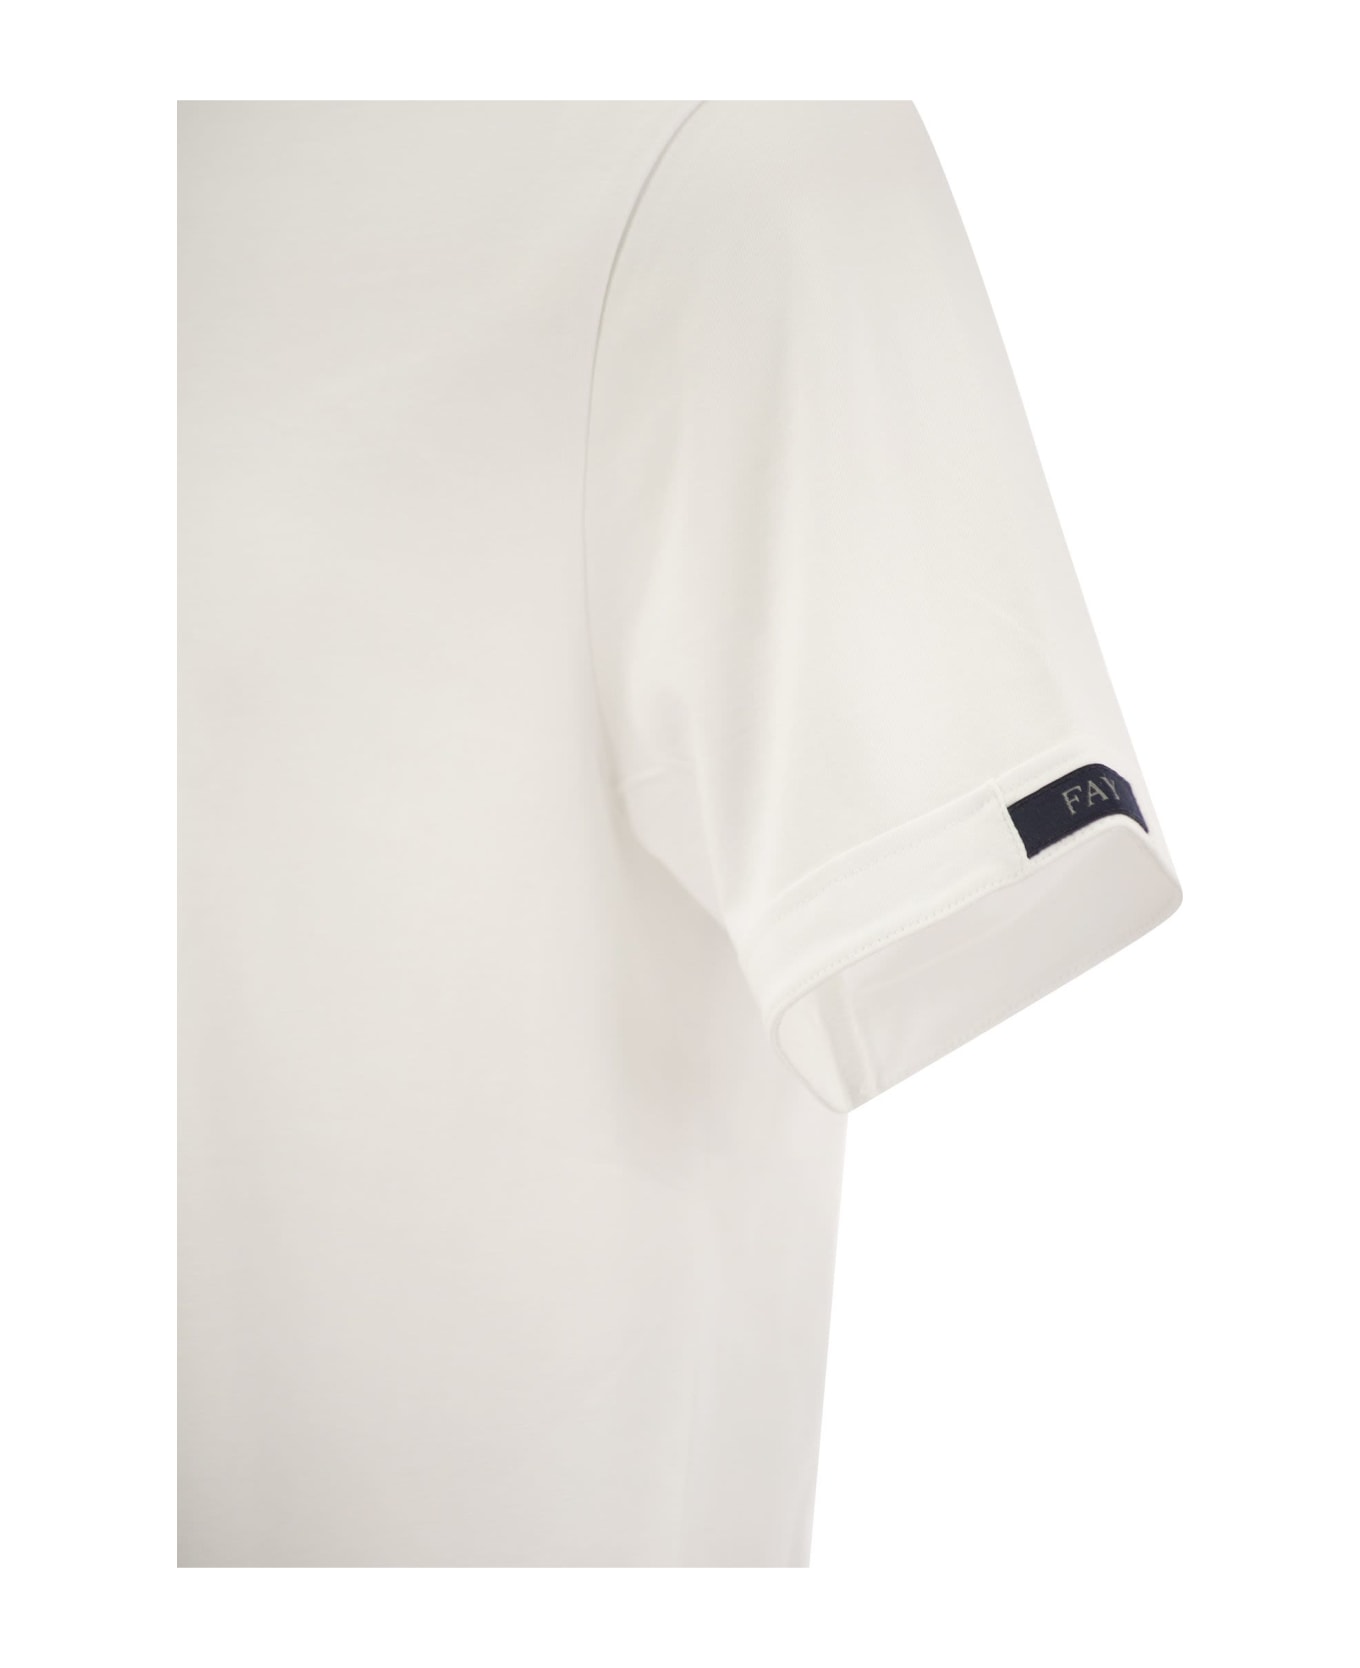 Fay White T-shirt - White